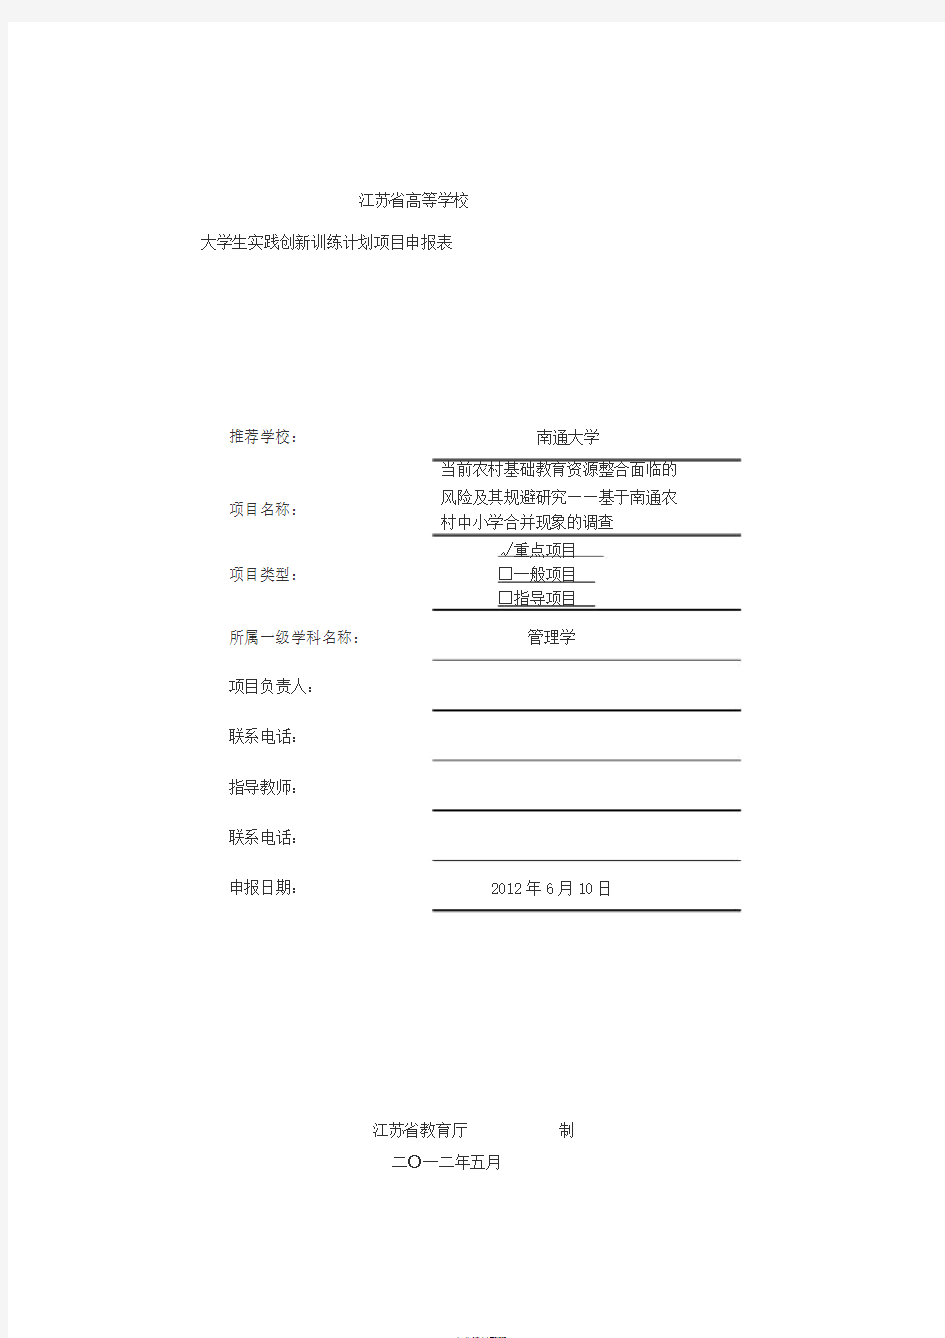 江苏级大学生创新创业训练计划项目申报表